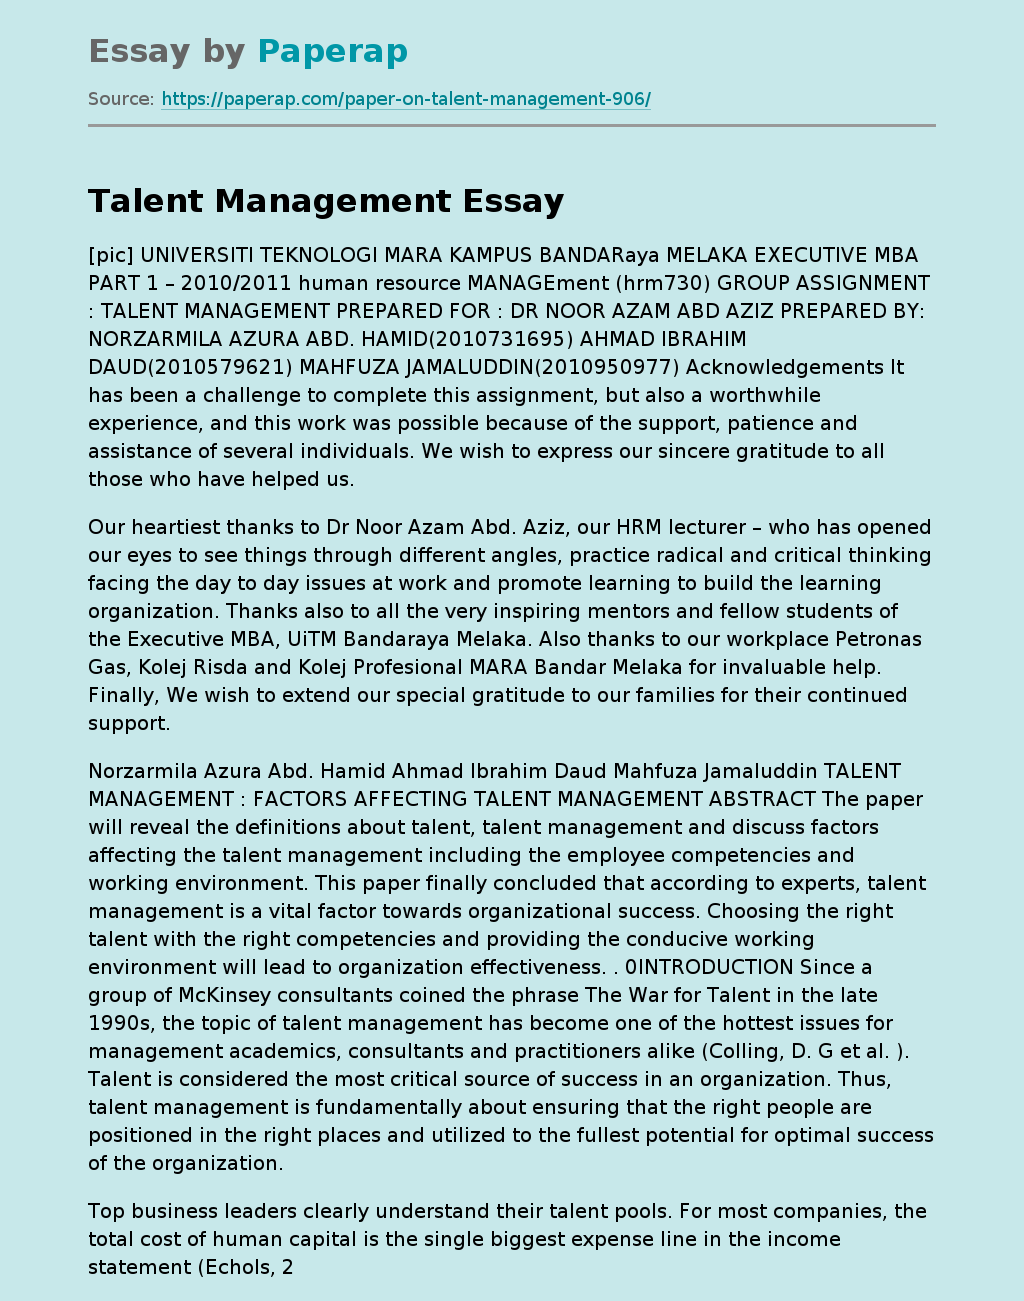 Talent Management : Factors Affecting Talent Management